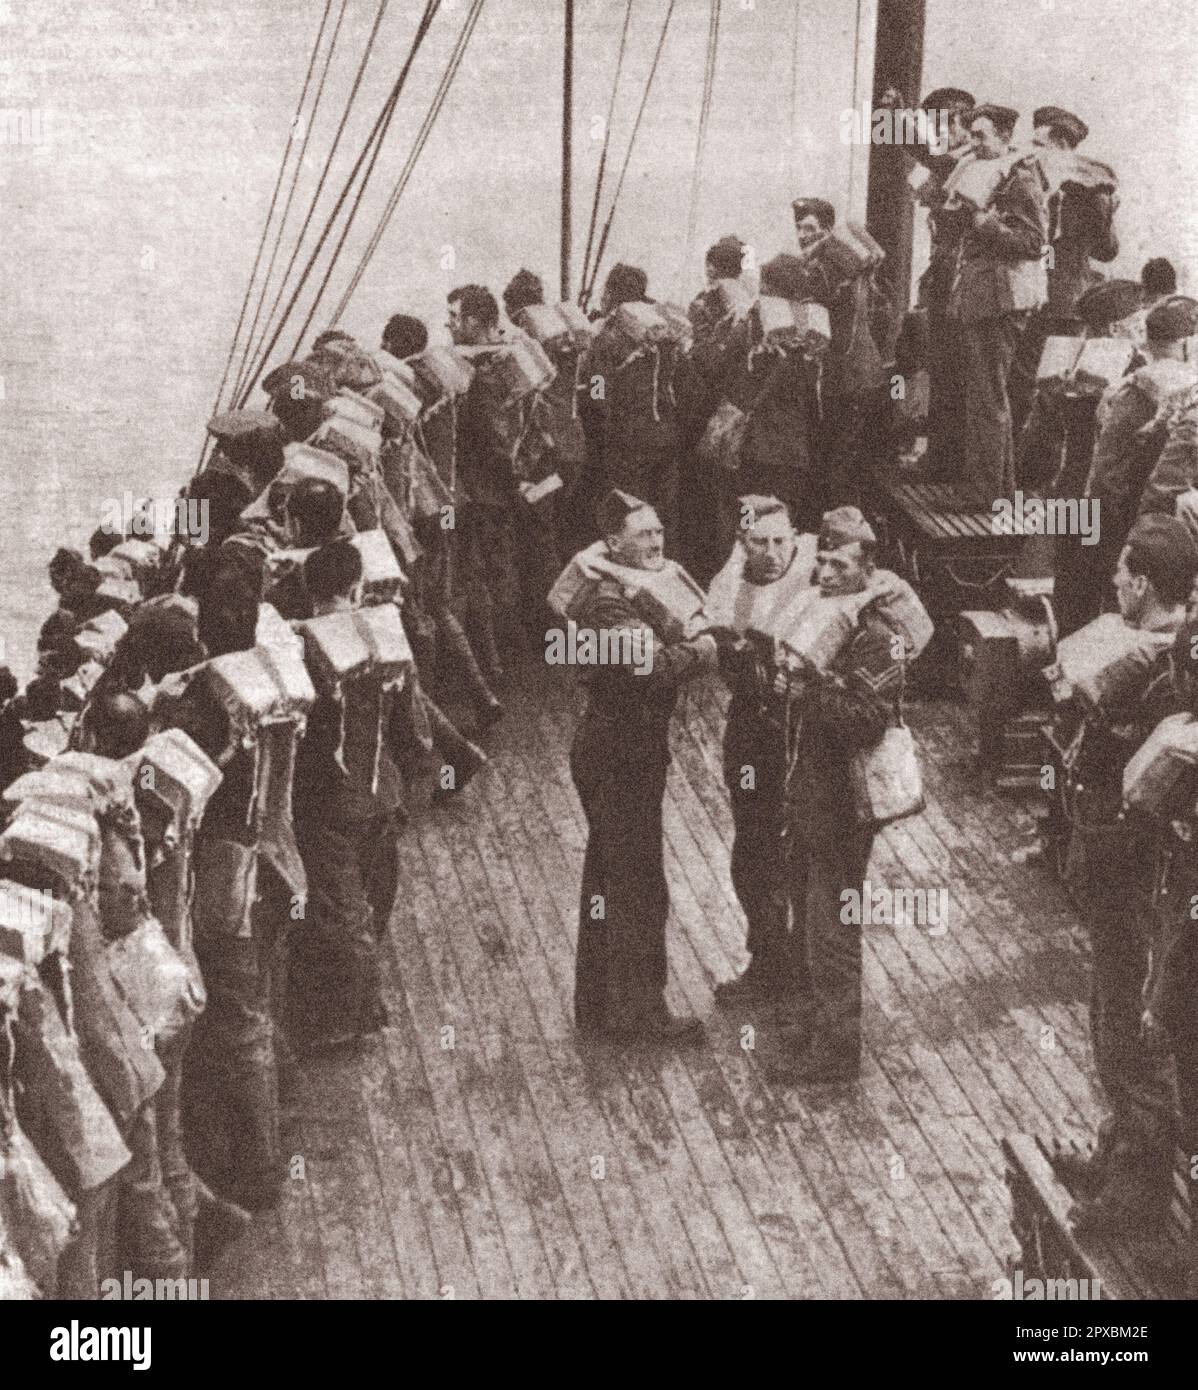 Die britische Expeditionstruppe entsendet im September 1939 nach Frankreich. Die britischen Soldaten, die den Kanal überqueren, tragen lebensrettende Ausrüstung, die sie über Wasser hält, wenn der Torpedo eines U-Bootes sie zum Wasser bringt. Stockfoto